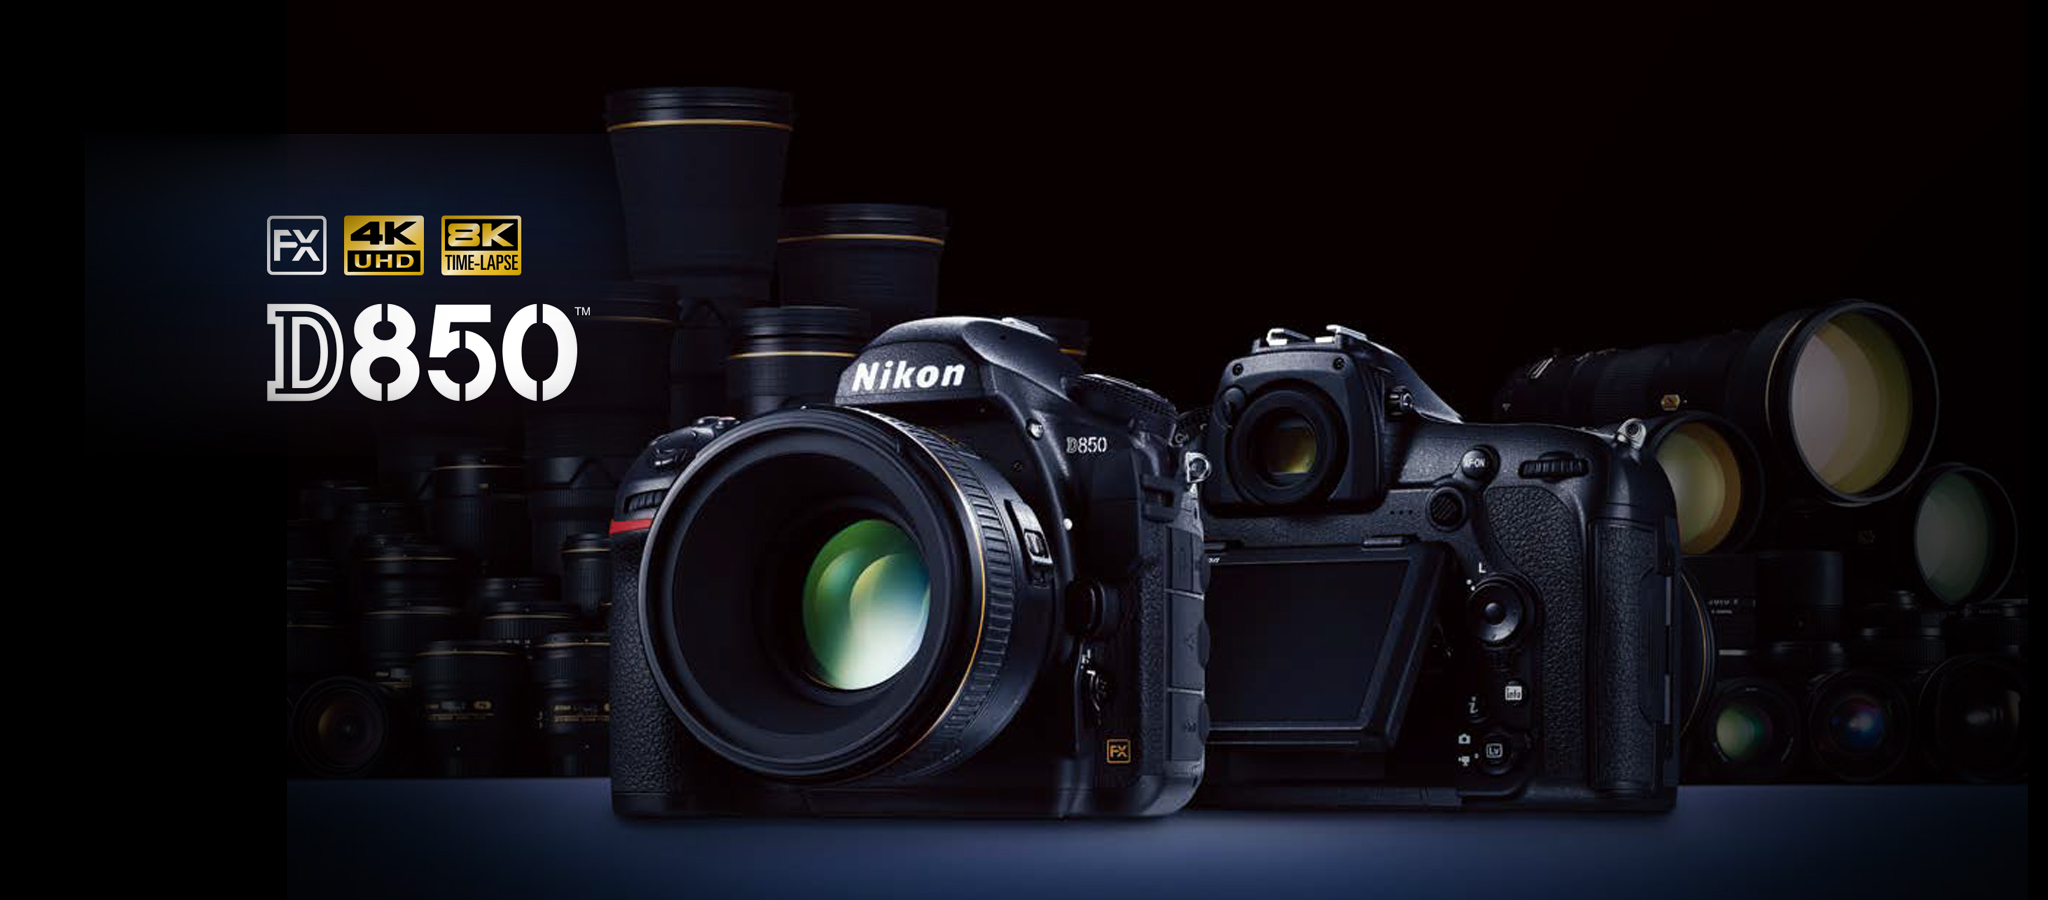 Nikon D850 ra mắt: tối ưu giữa độ phân giải cao và hiệu suất hoạt động của máy, giá 75 triệu